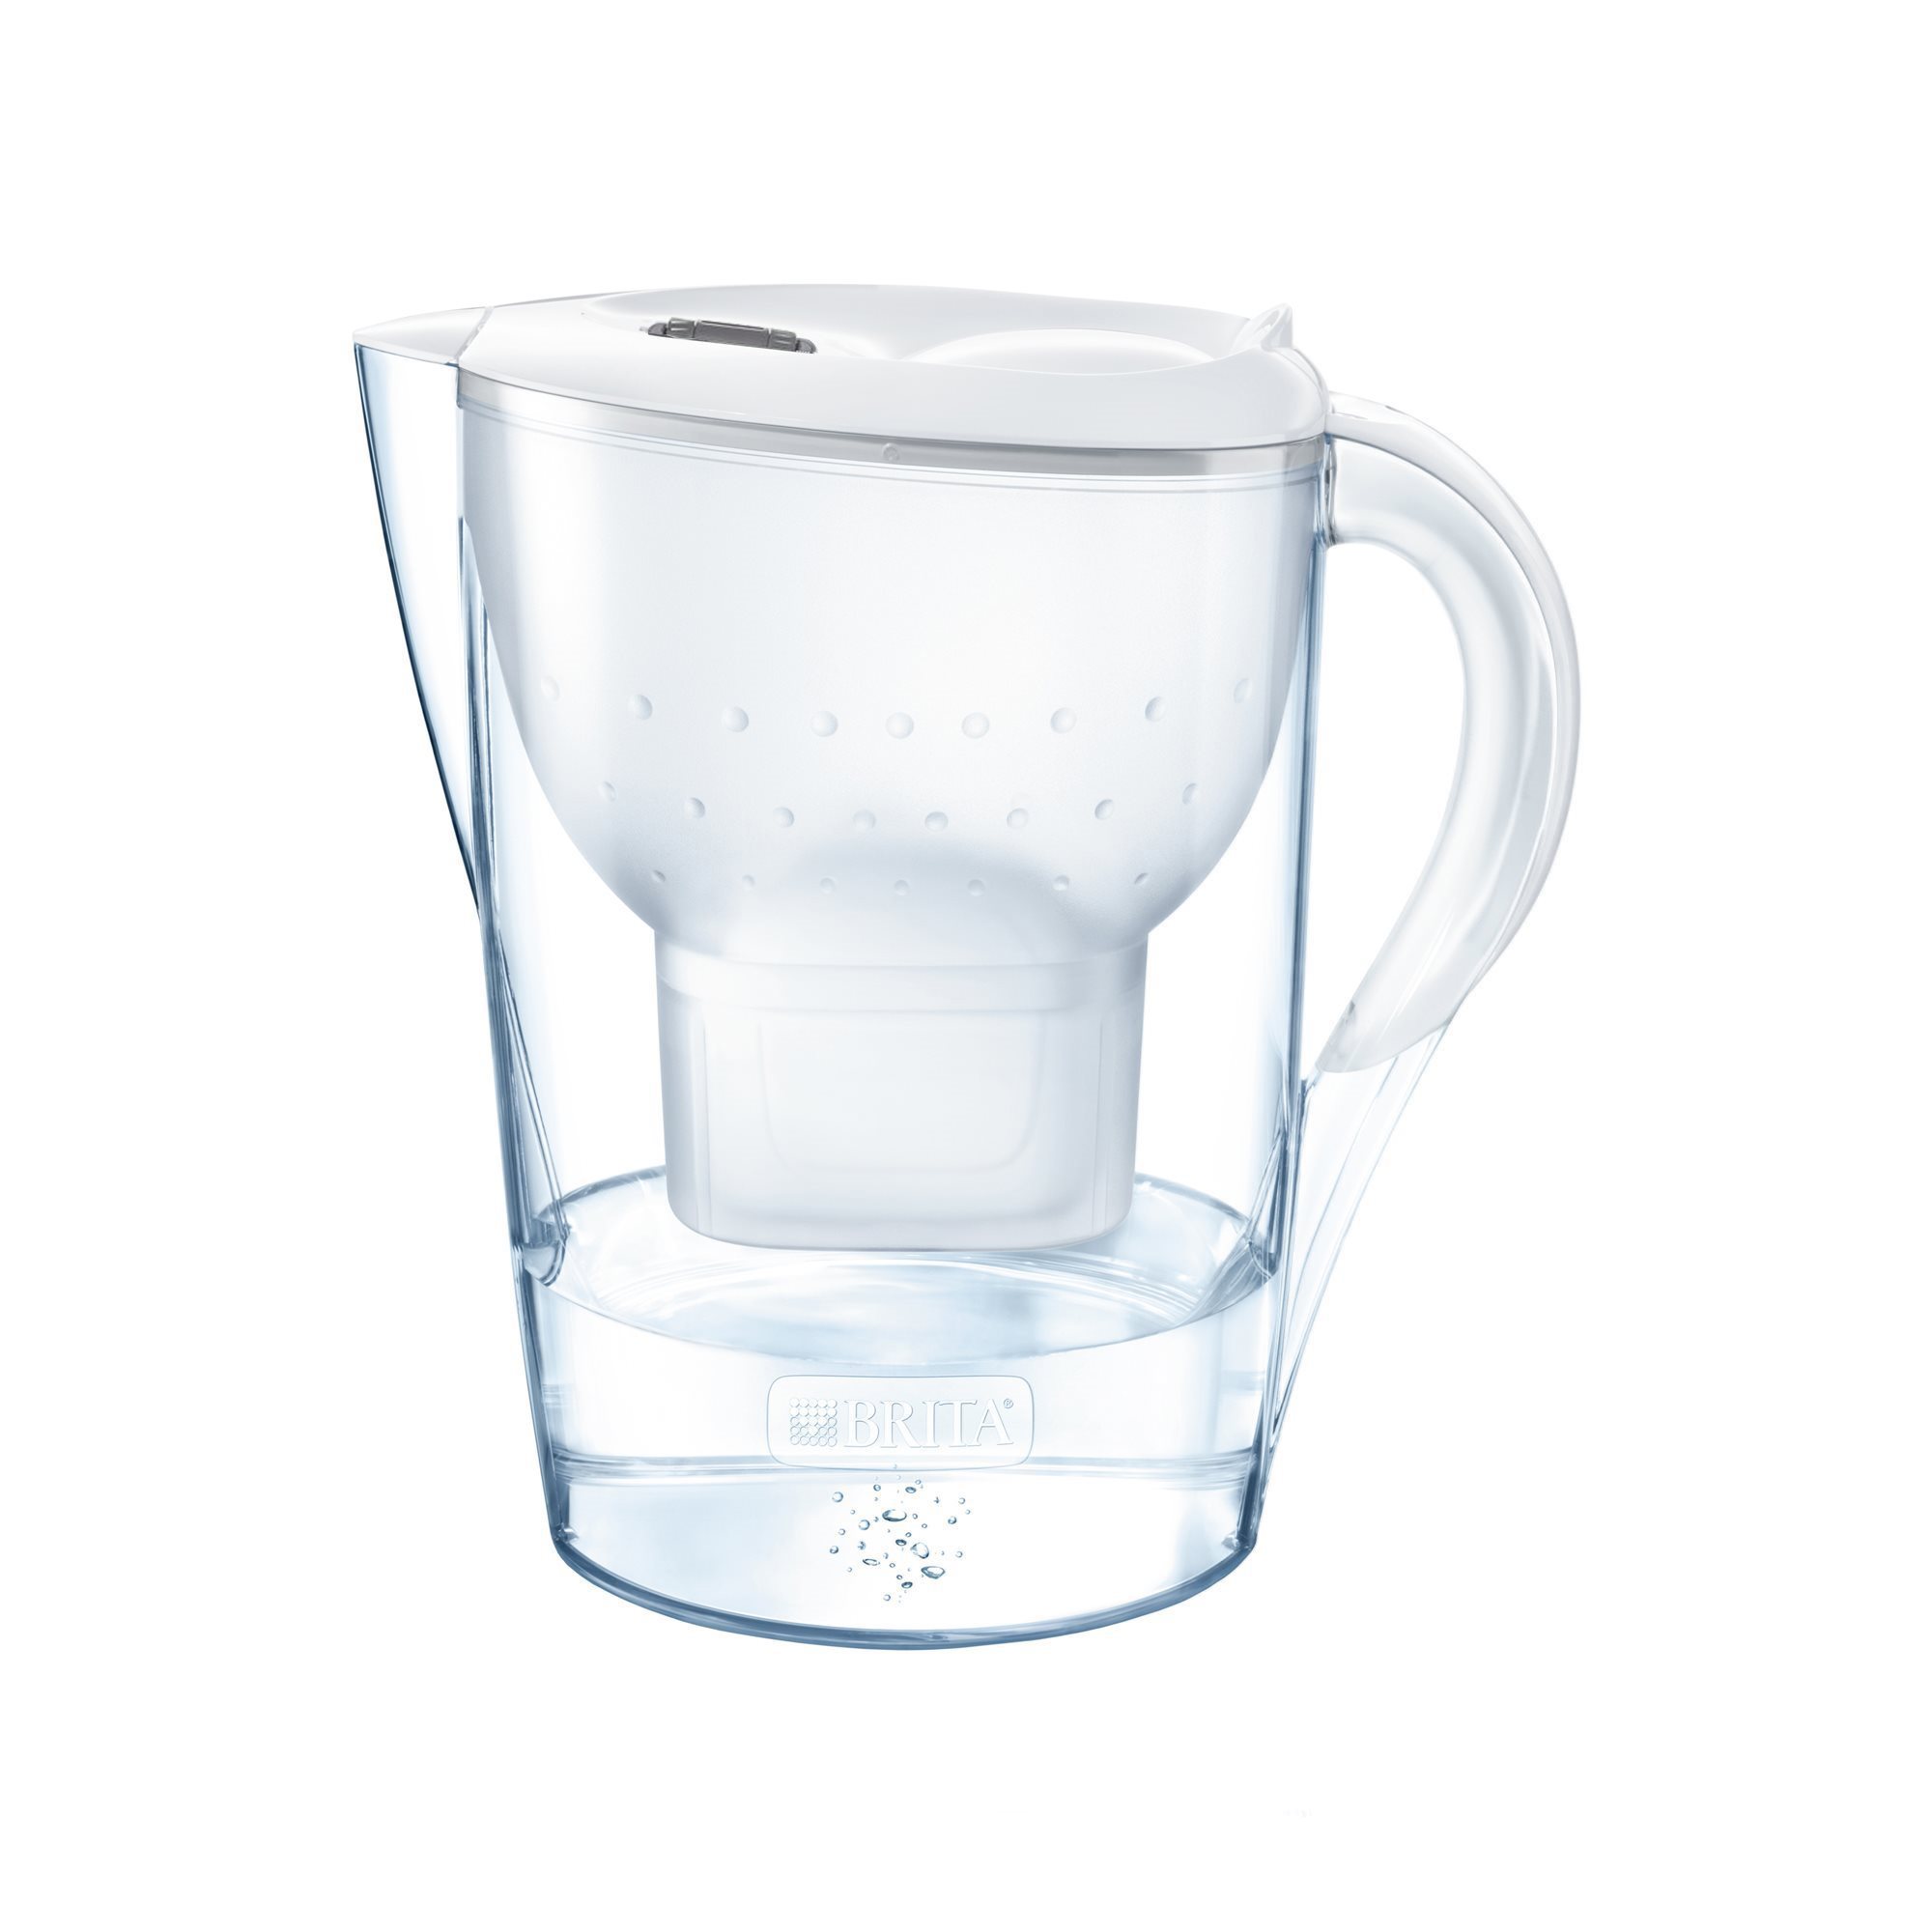 BRITA Marella Cool filter mug, 2.4 L (white) | KitchenShop